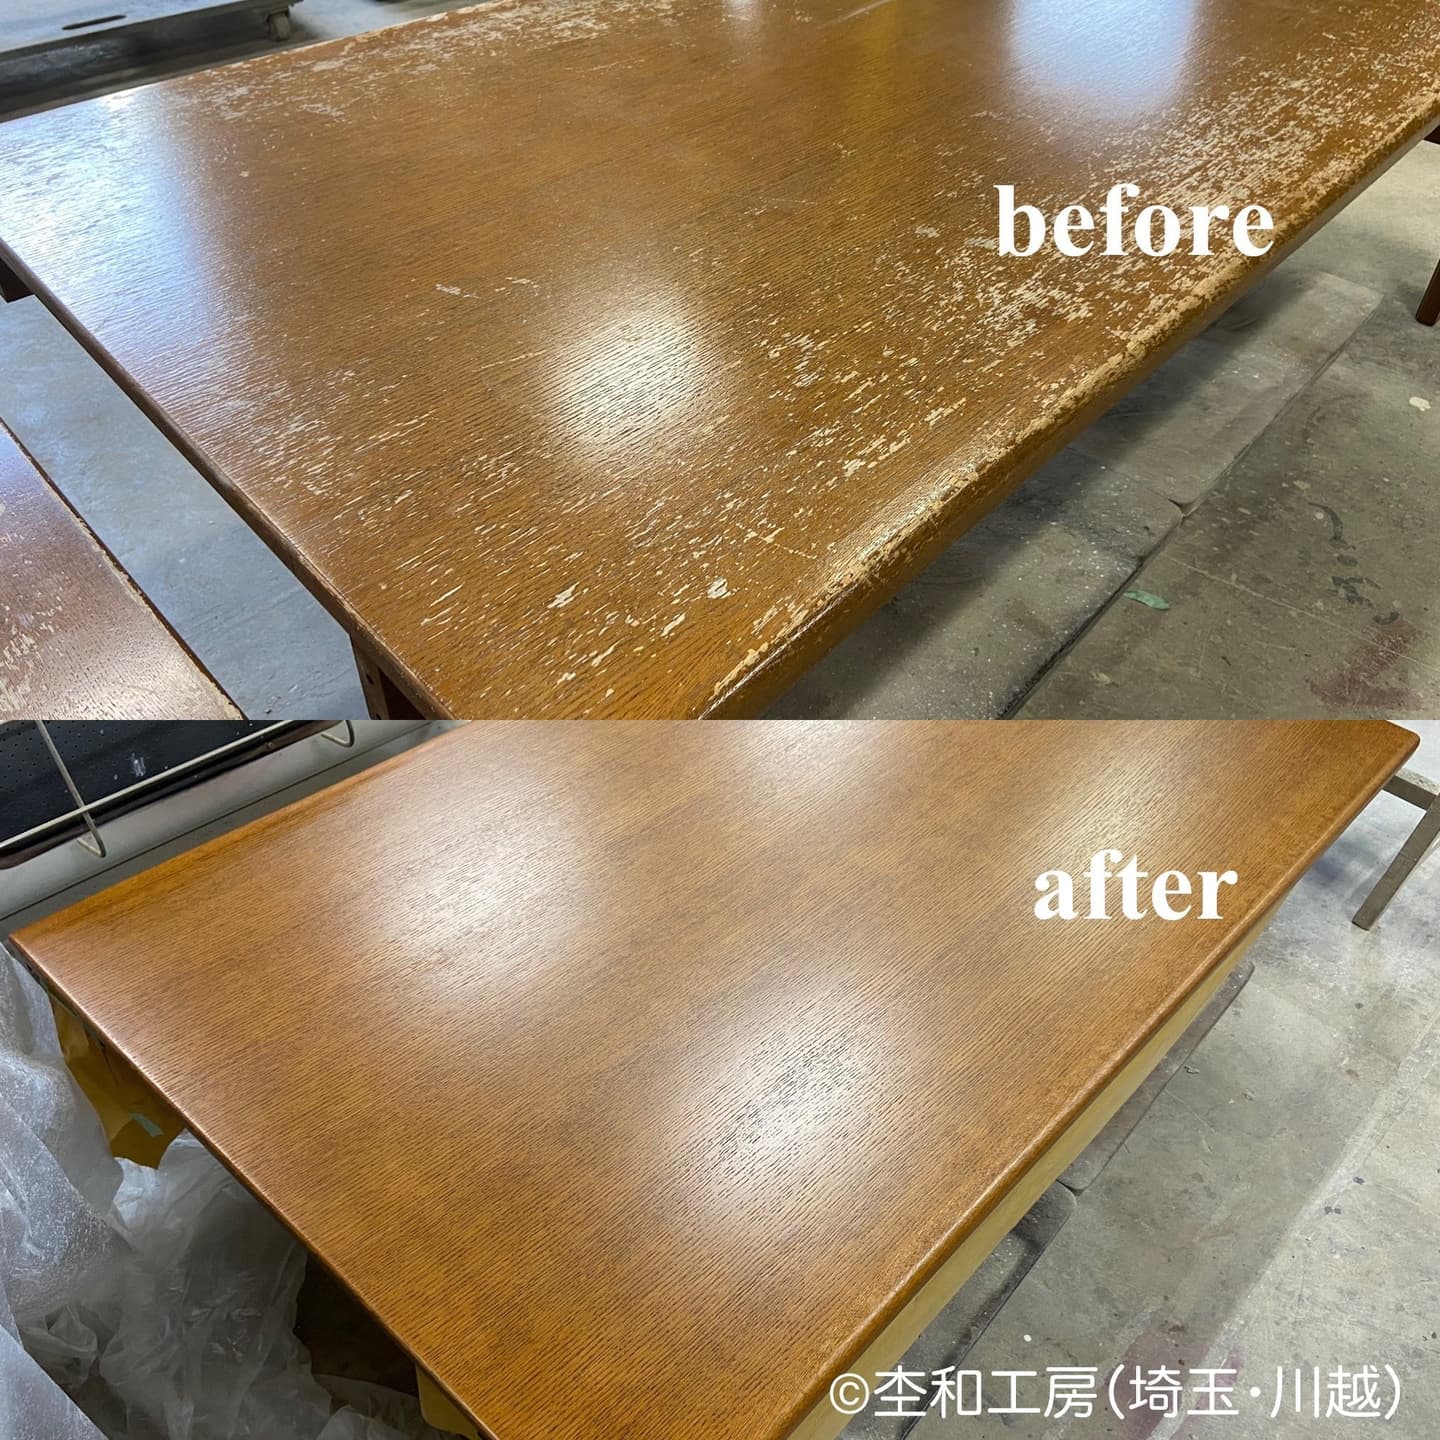 再塗装したイーセンアーレンのテーブル